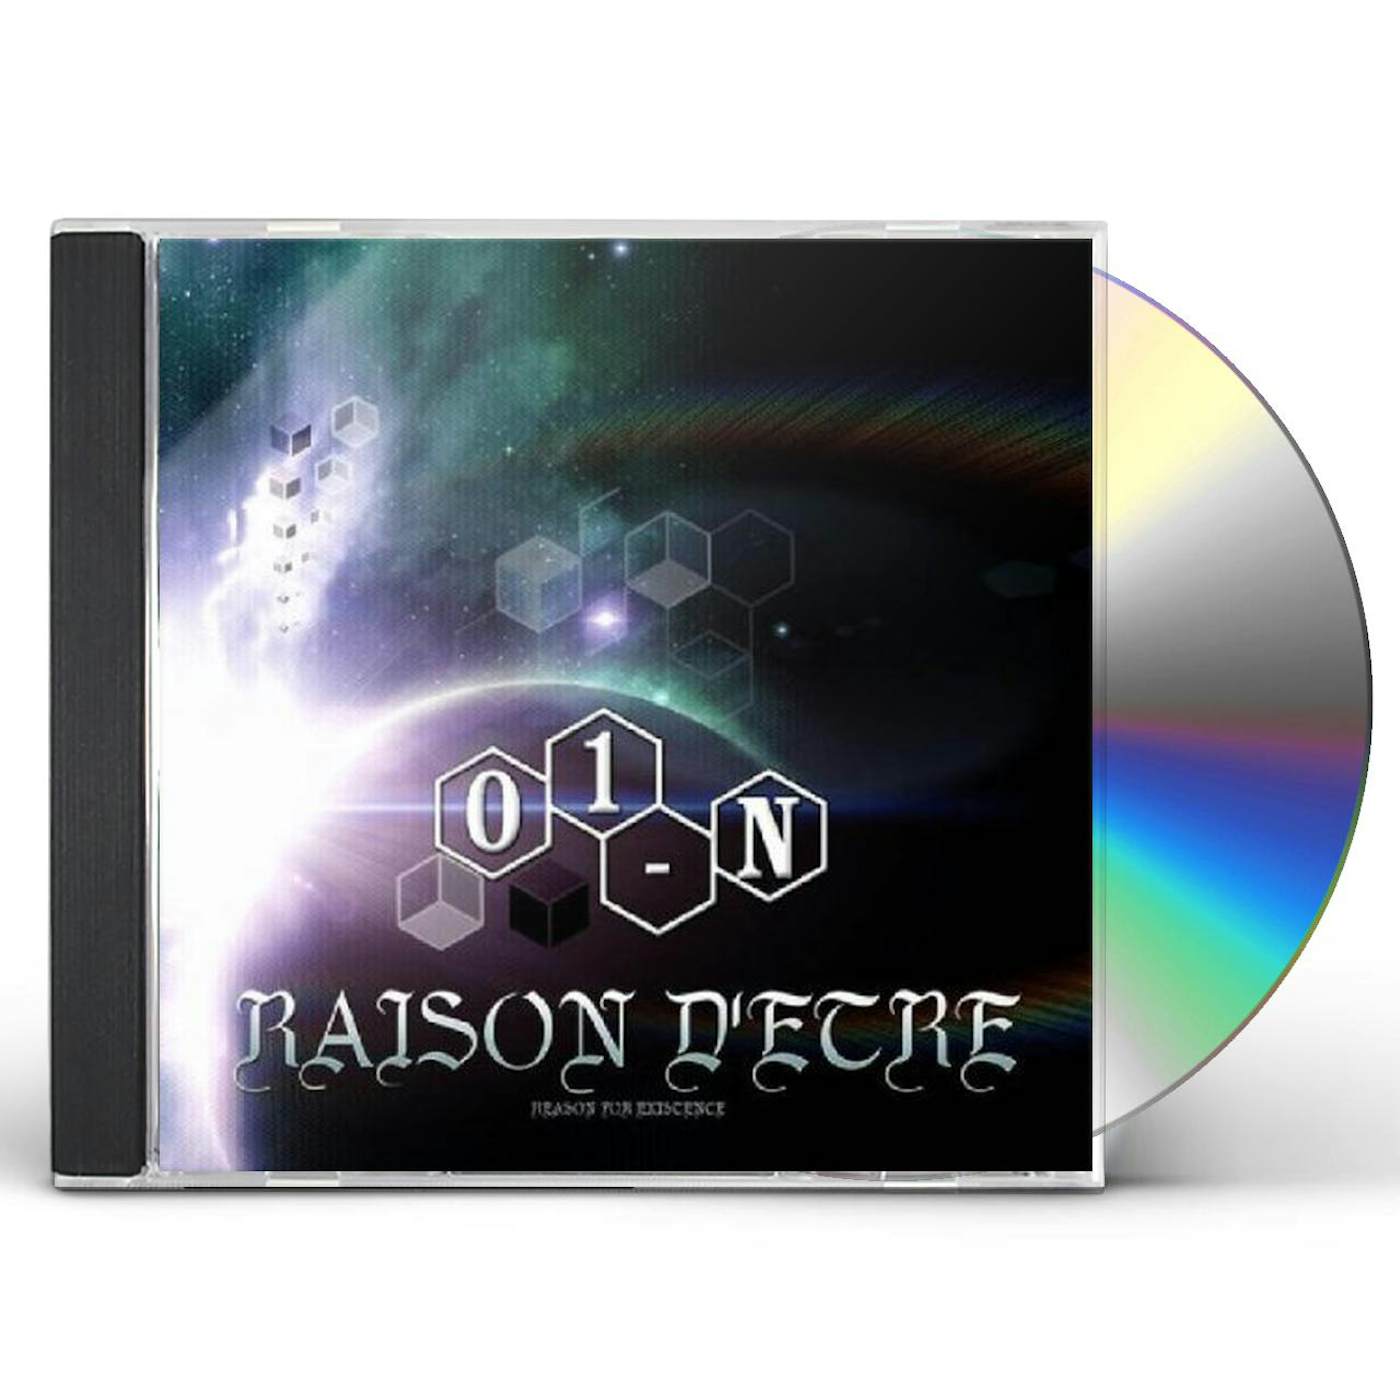 01-N RAISON D'ETRE CD